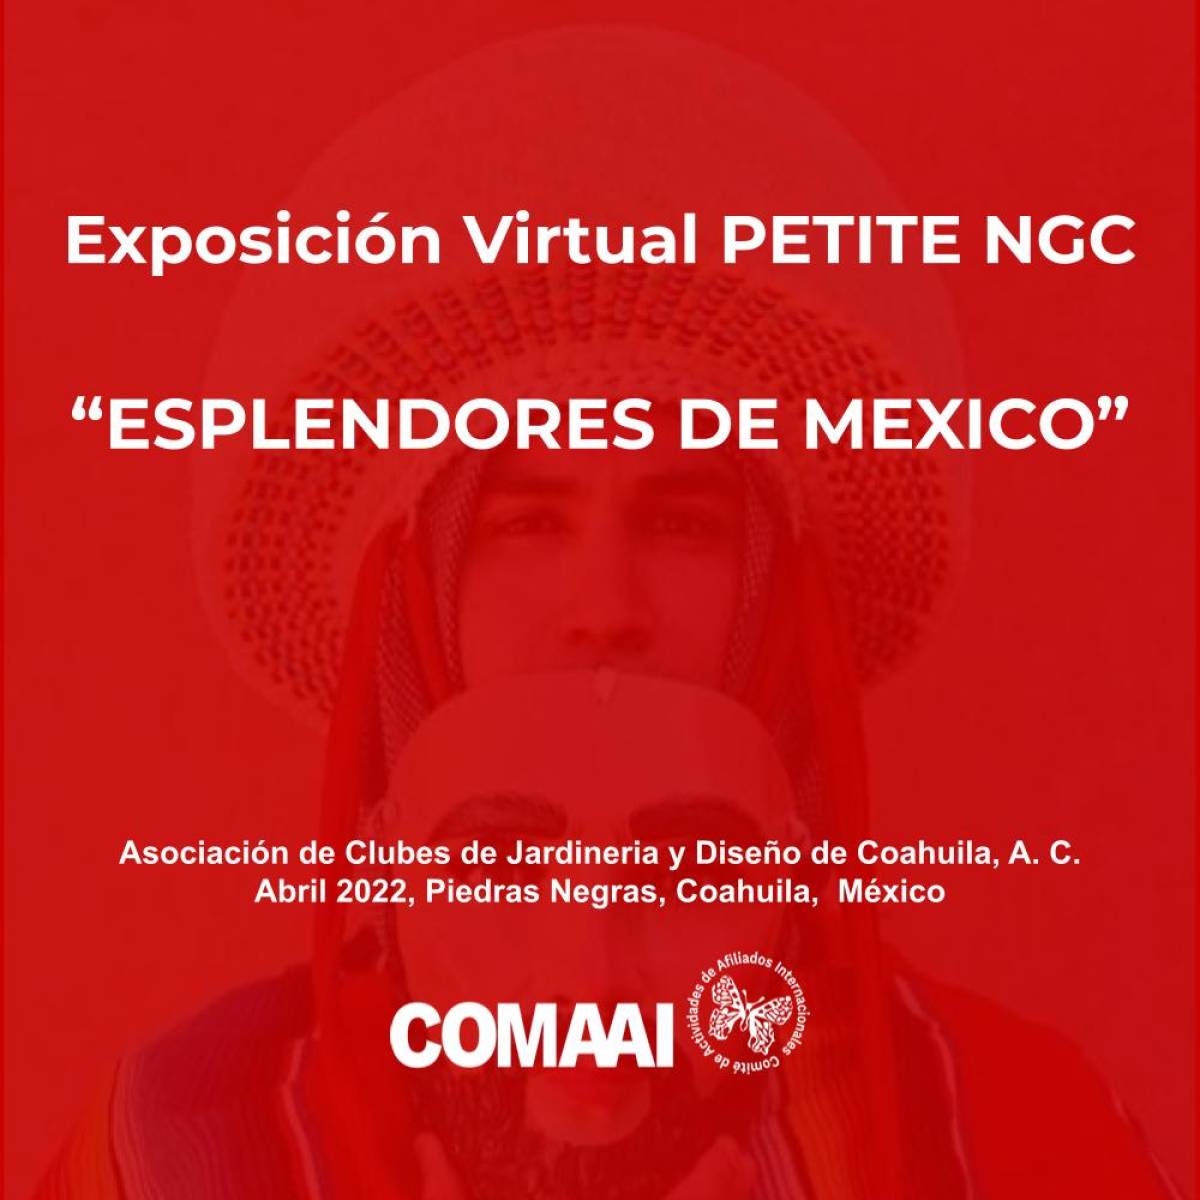 Exposición Virtual Petite NGC Esplendores de México